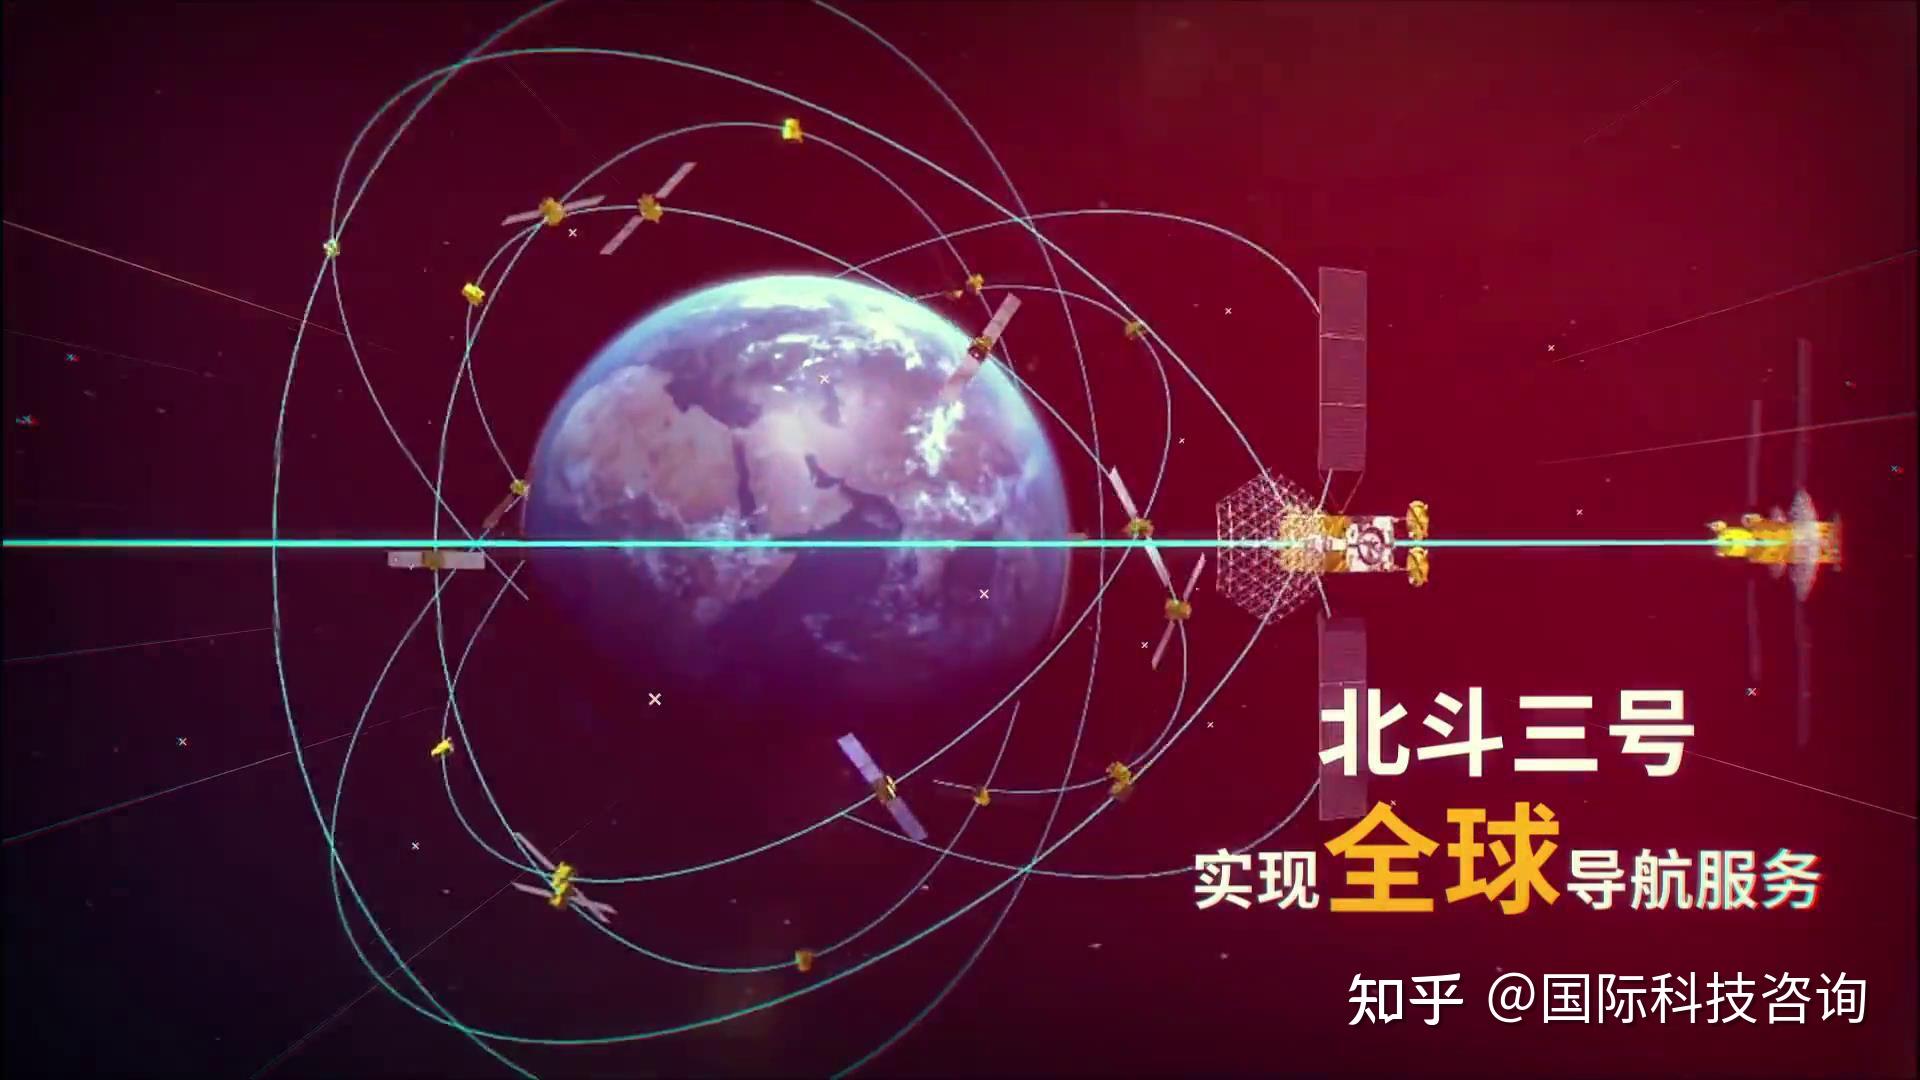 美媒急了发现中国失效北斗卫星被拖离轨道要求让技术更透明